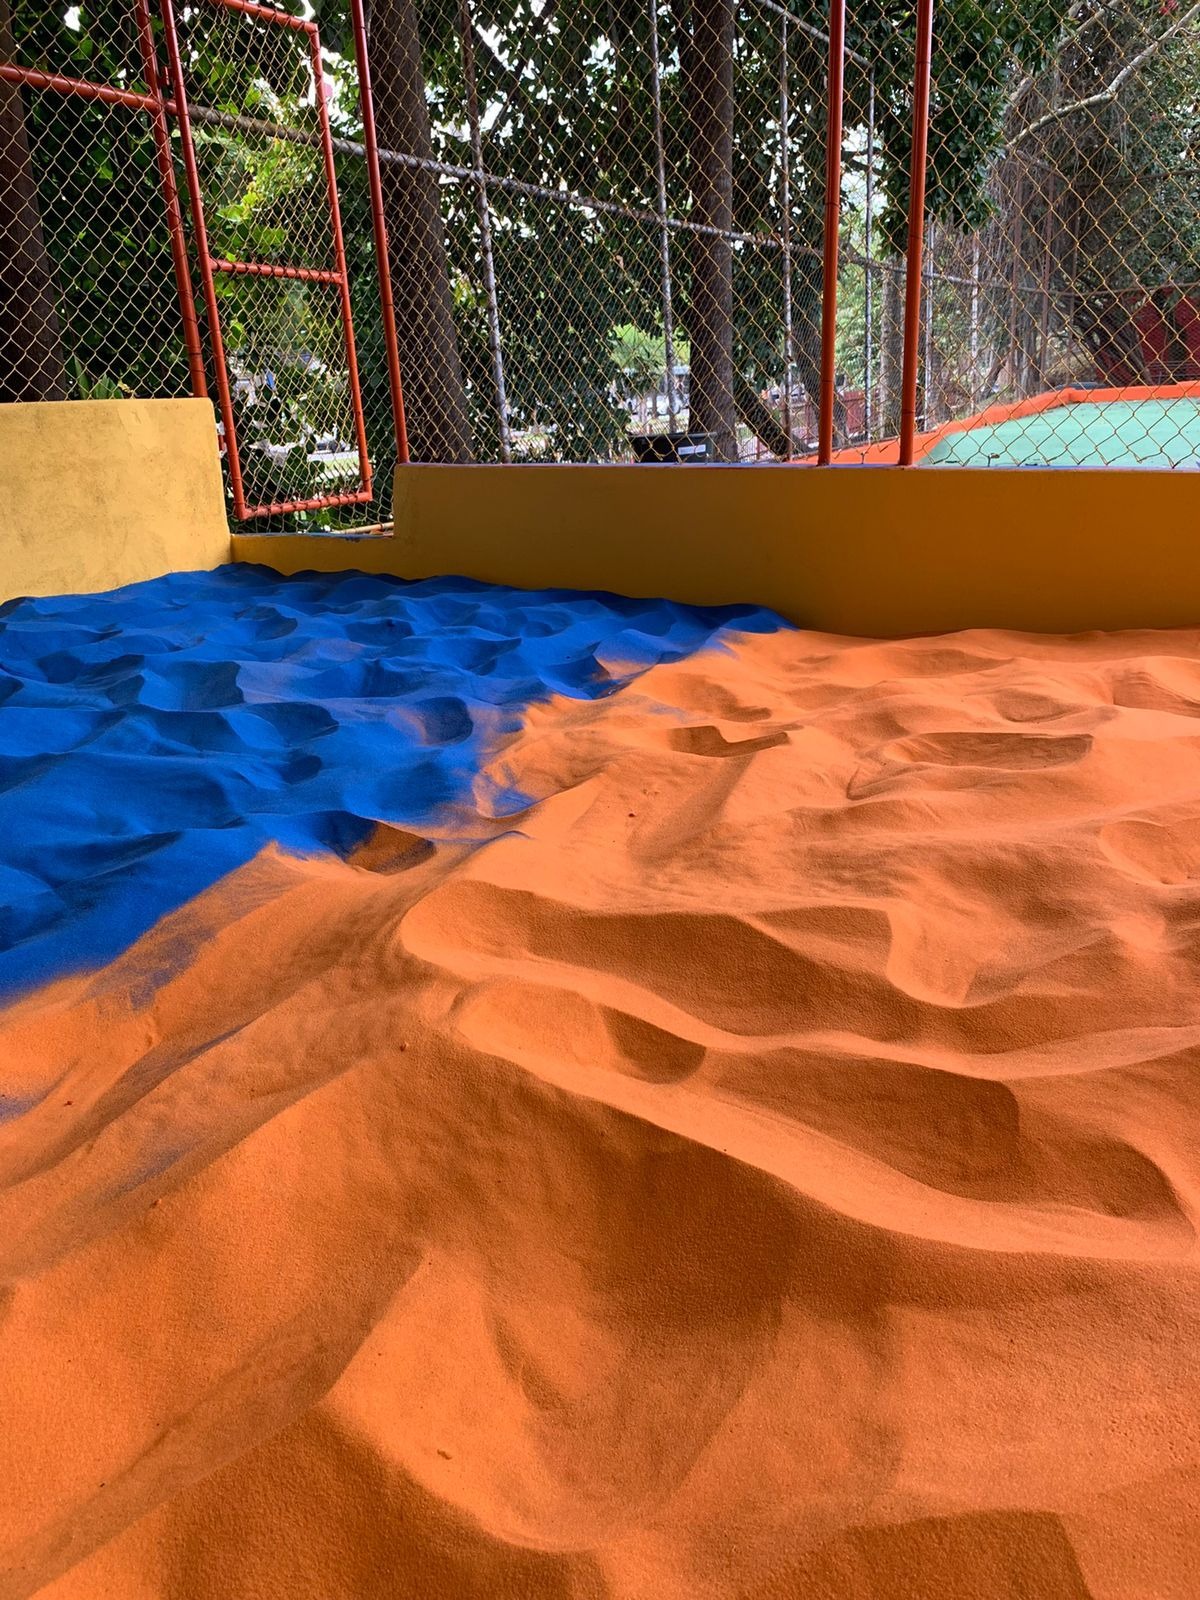 Granulata - Areia Tratada para Playground - 1